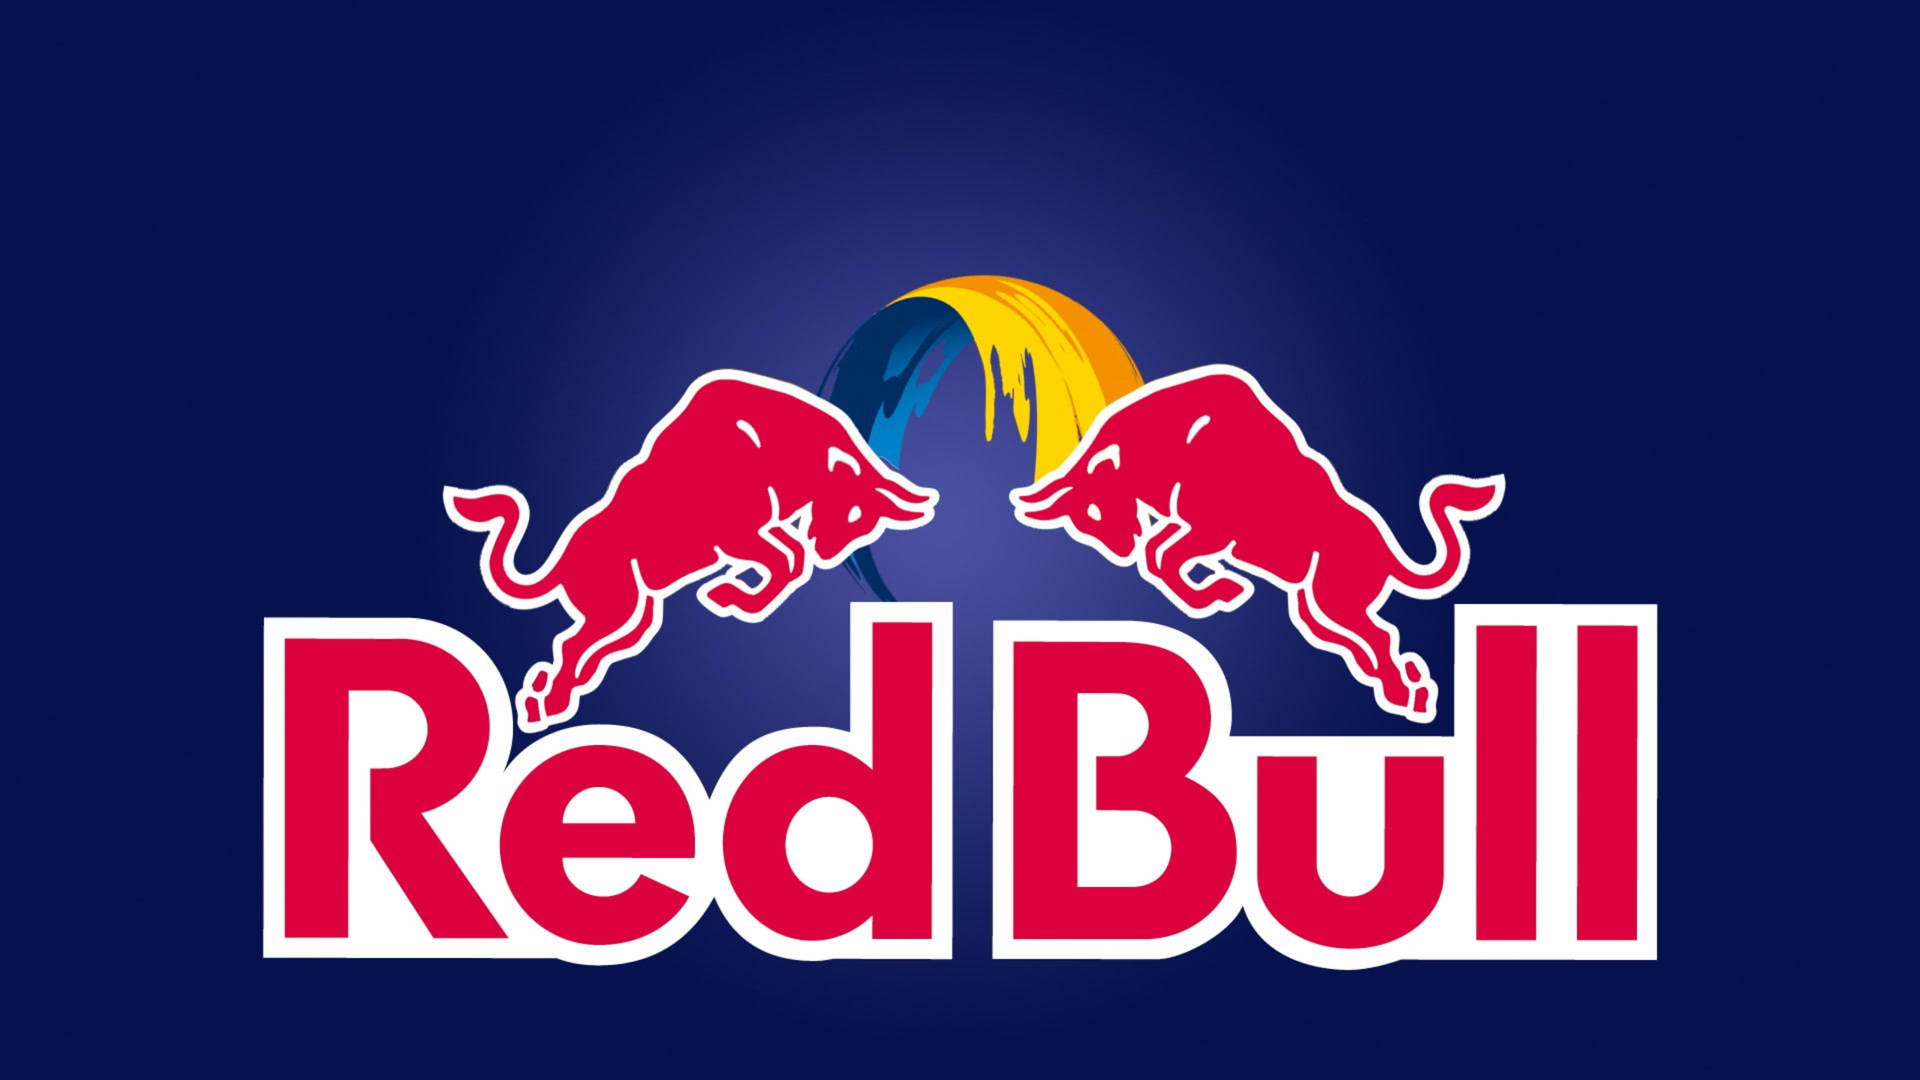 Red Bull Logo Background